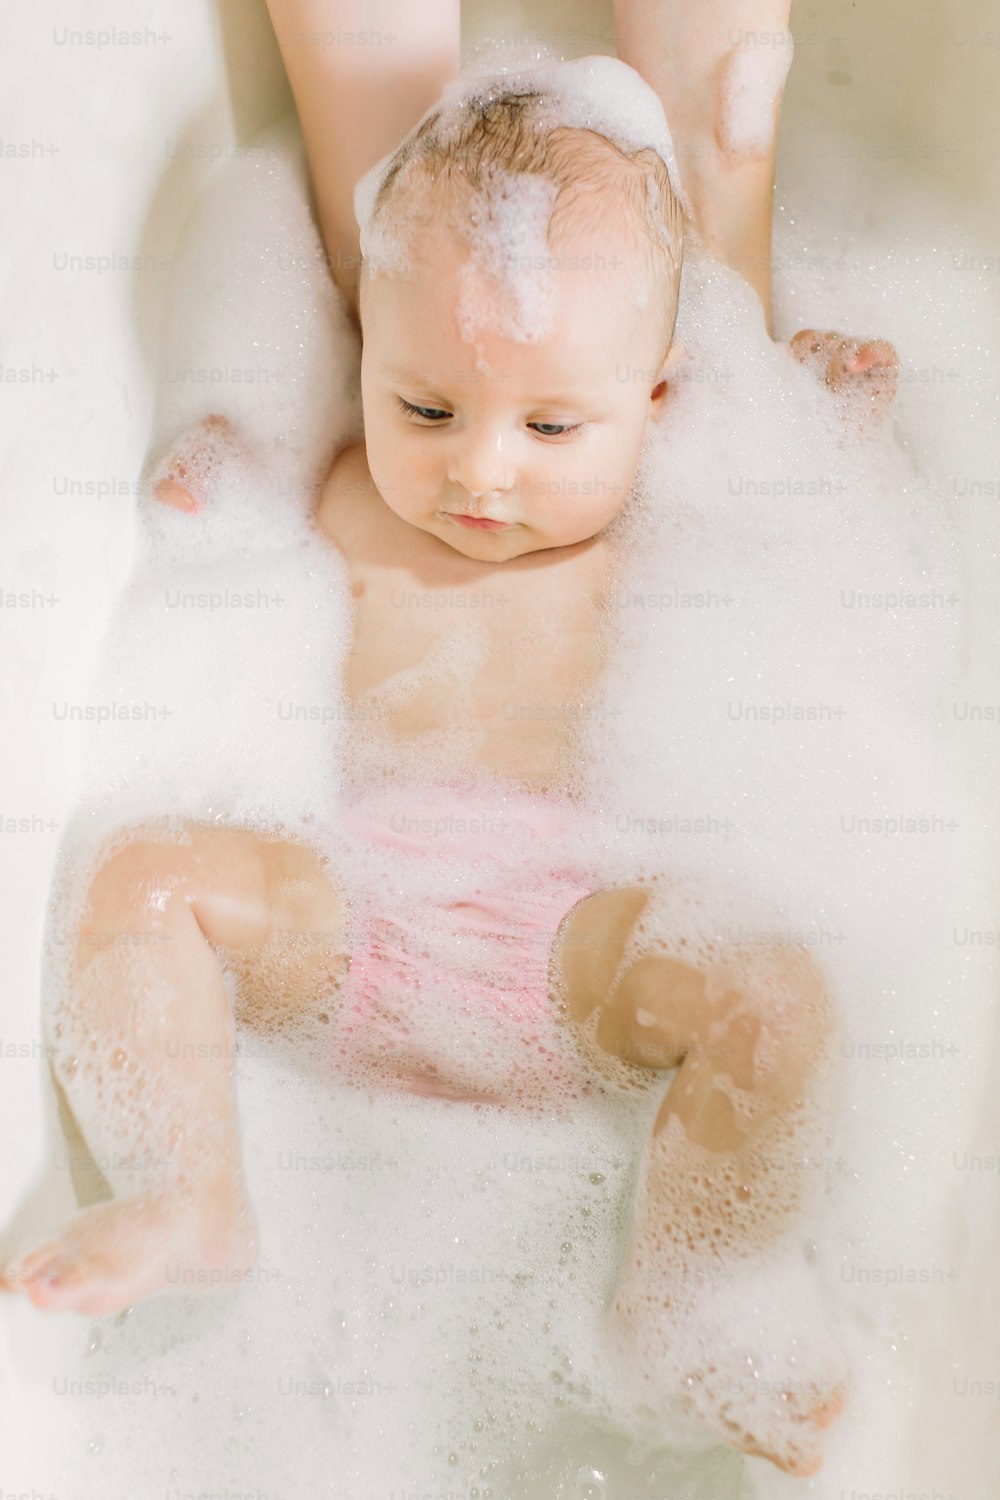 Bambino felice che ride facendo il bagno giocando con le bolle di schiuma. Bambino piccolo in una vasca da bagno. Bambino sorridente in bagno con anatra giocattolo colorata. Lavaggio e bagnetto dei neonati. Igiene e cura dei bambini piccoli.